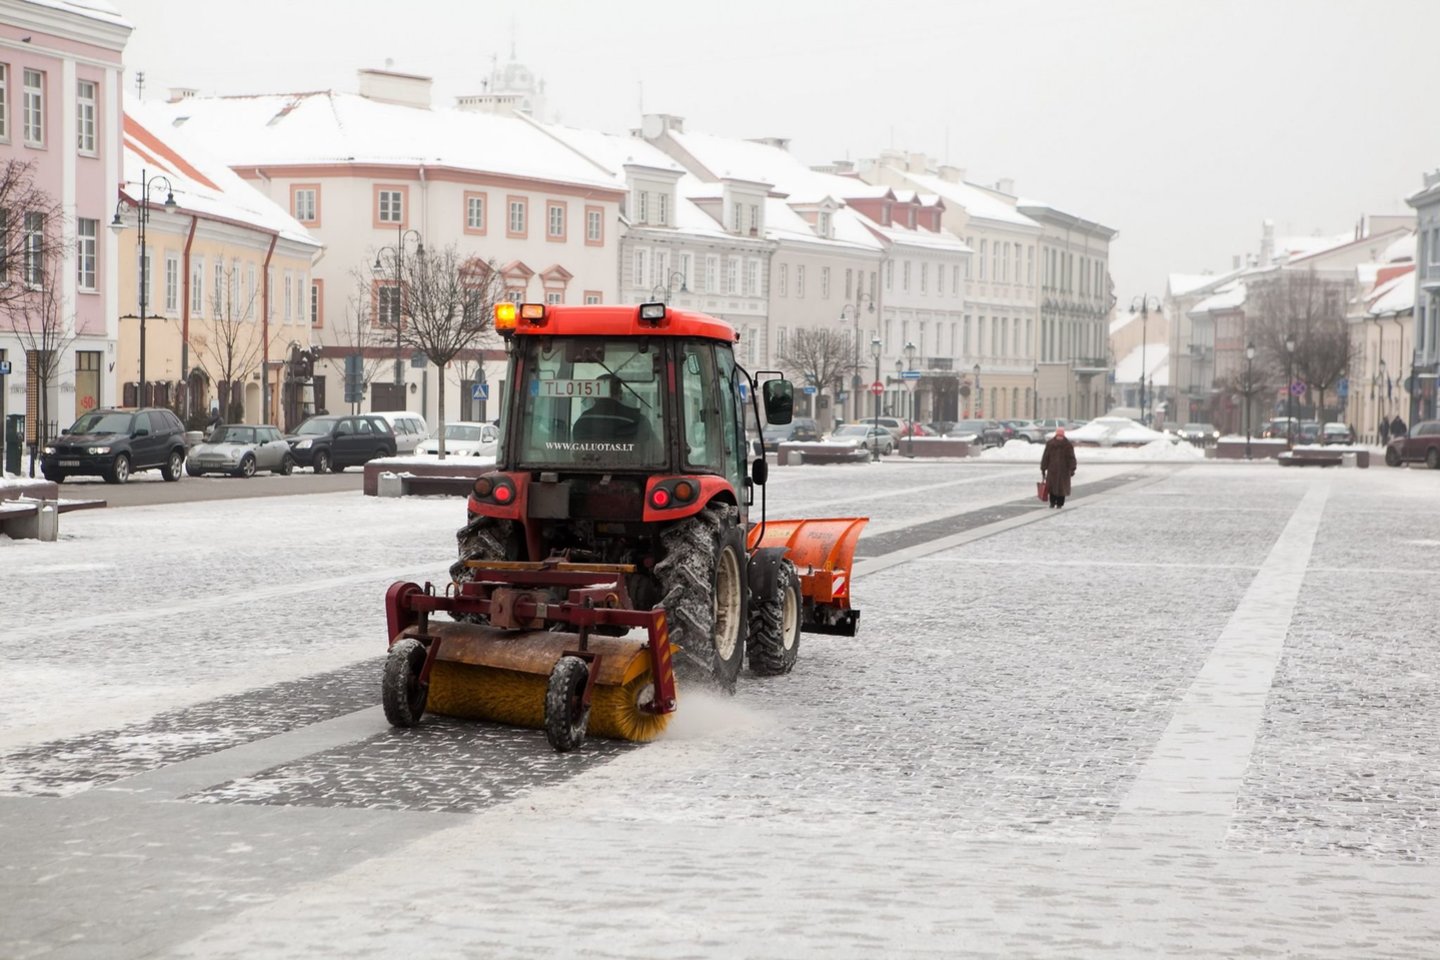 Nors kalendorinė žiema prasideda šiandien, vilniečiai jau turėjo progų prasilenkti su miesto teritoriją tvarkančių įmonių traktoriais, motoblokais, kompaktiškais sniego valytuvais bei kita įranga.<br>Vilniaus savivaldybės nuotr.